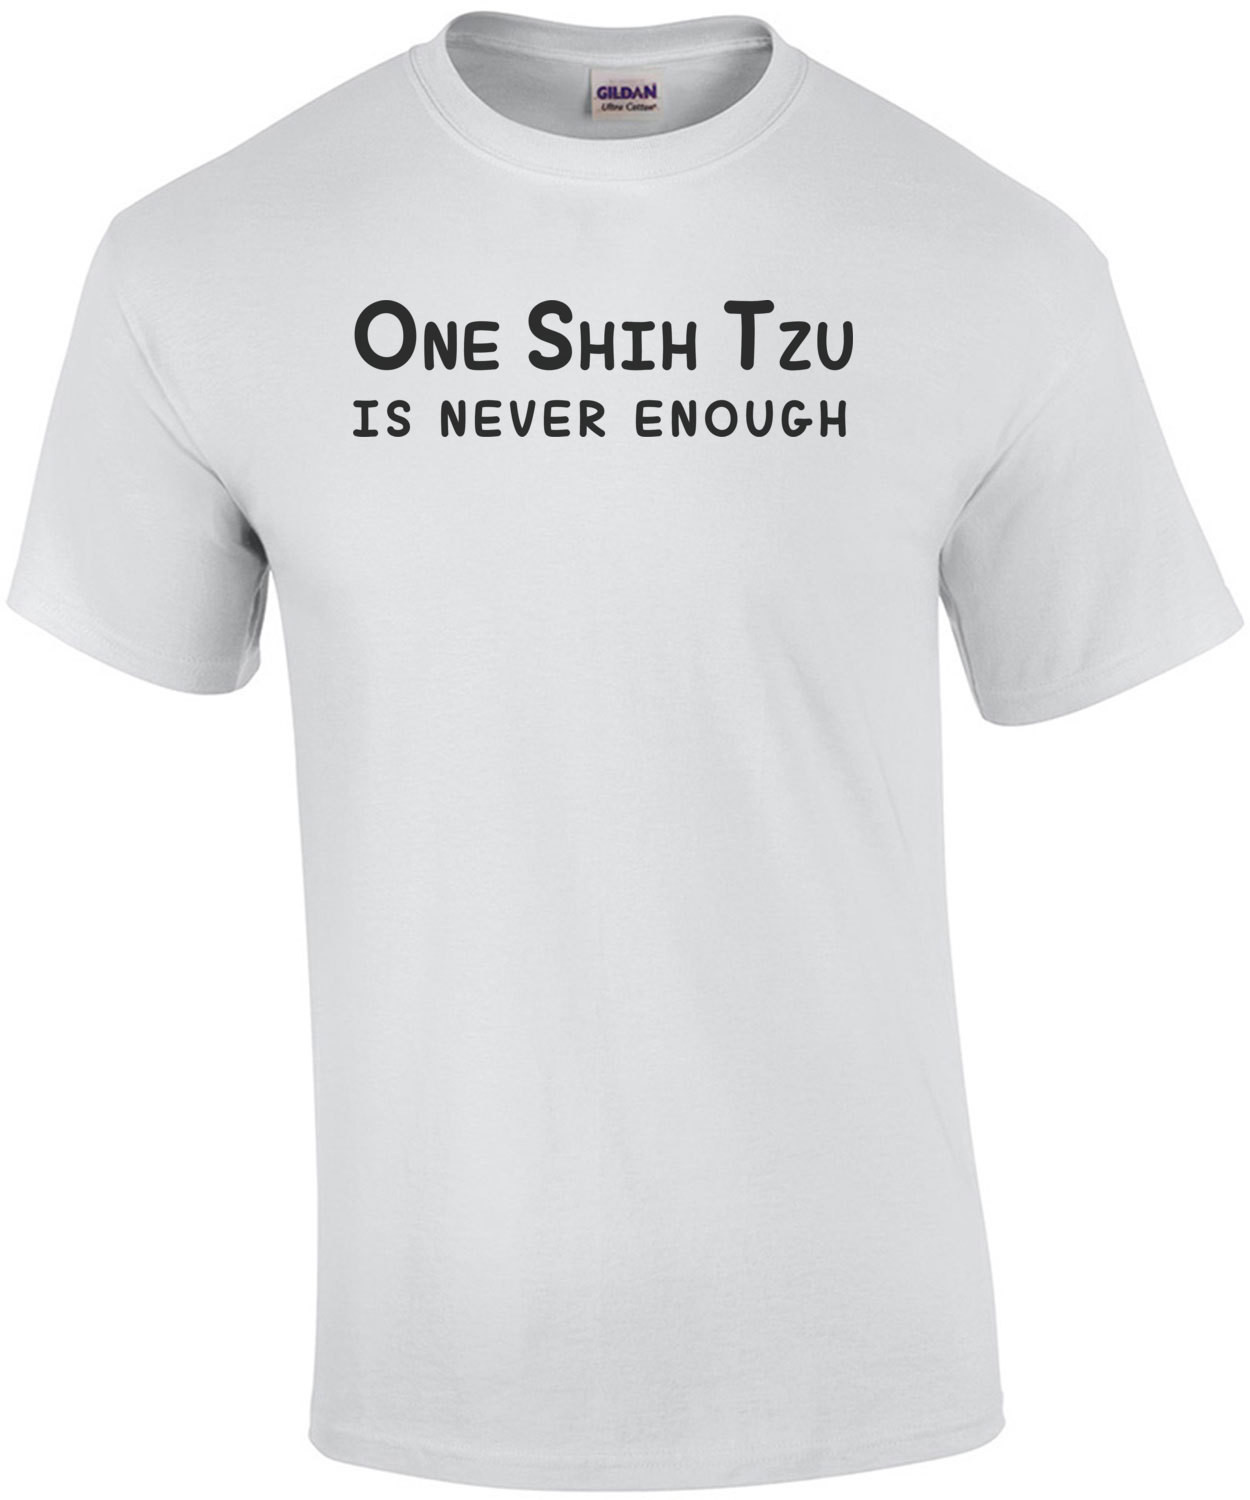 One Shih Tzu is never enough - Shih Tzu T-Shirt